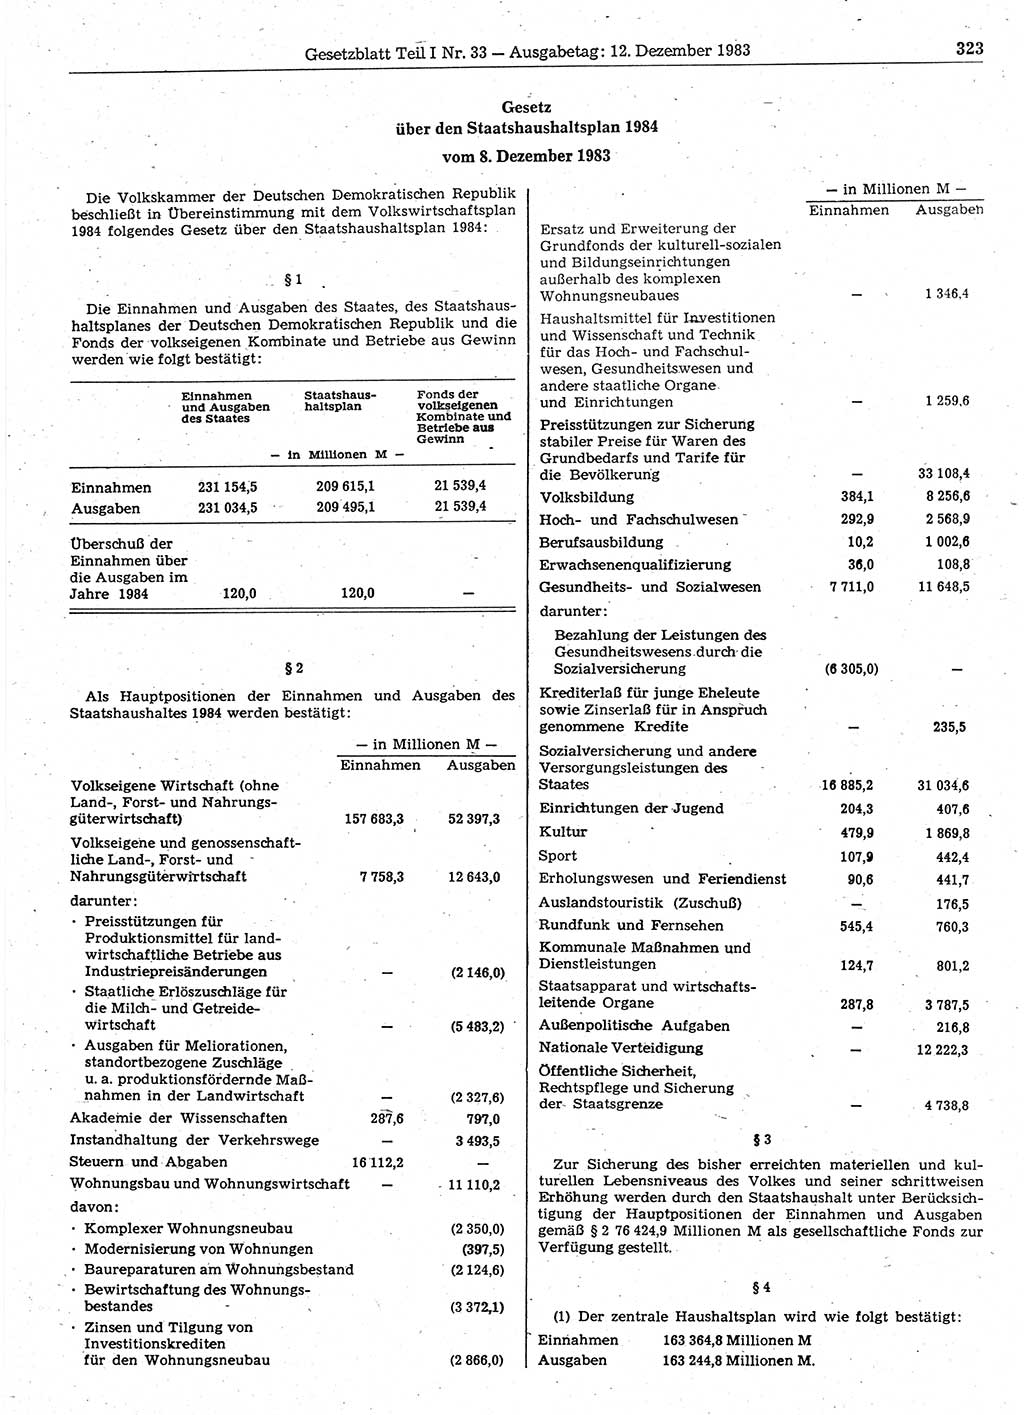 Gesetzblatt (GBl.) der Deutschen Demokratischen Republik (DDR) Teil Ⅰ 1983, Seite 323 (GBl. DDR Ⅰ 1983, S. 323)